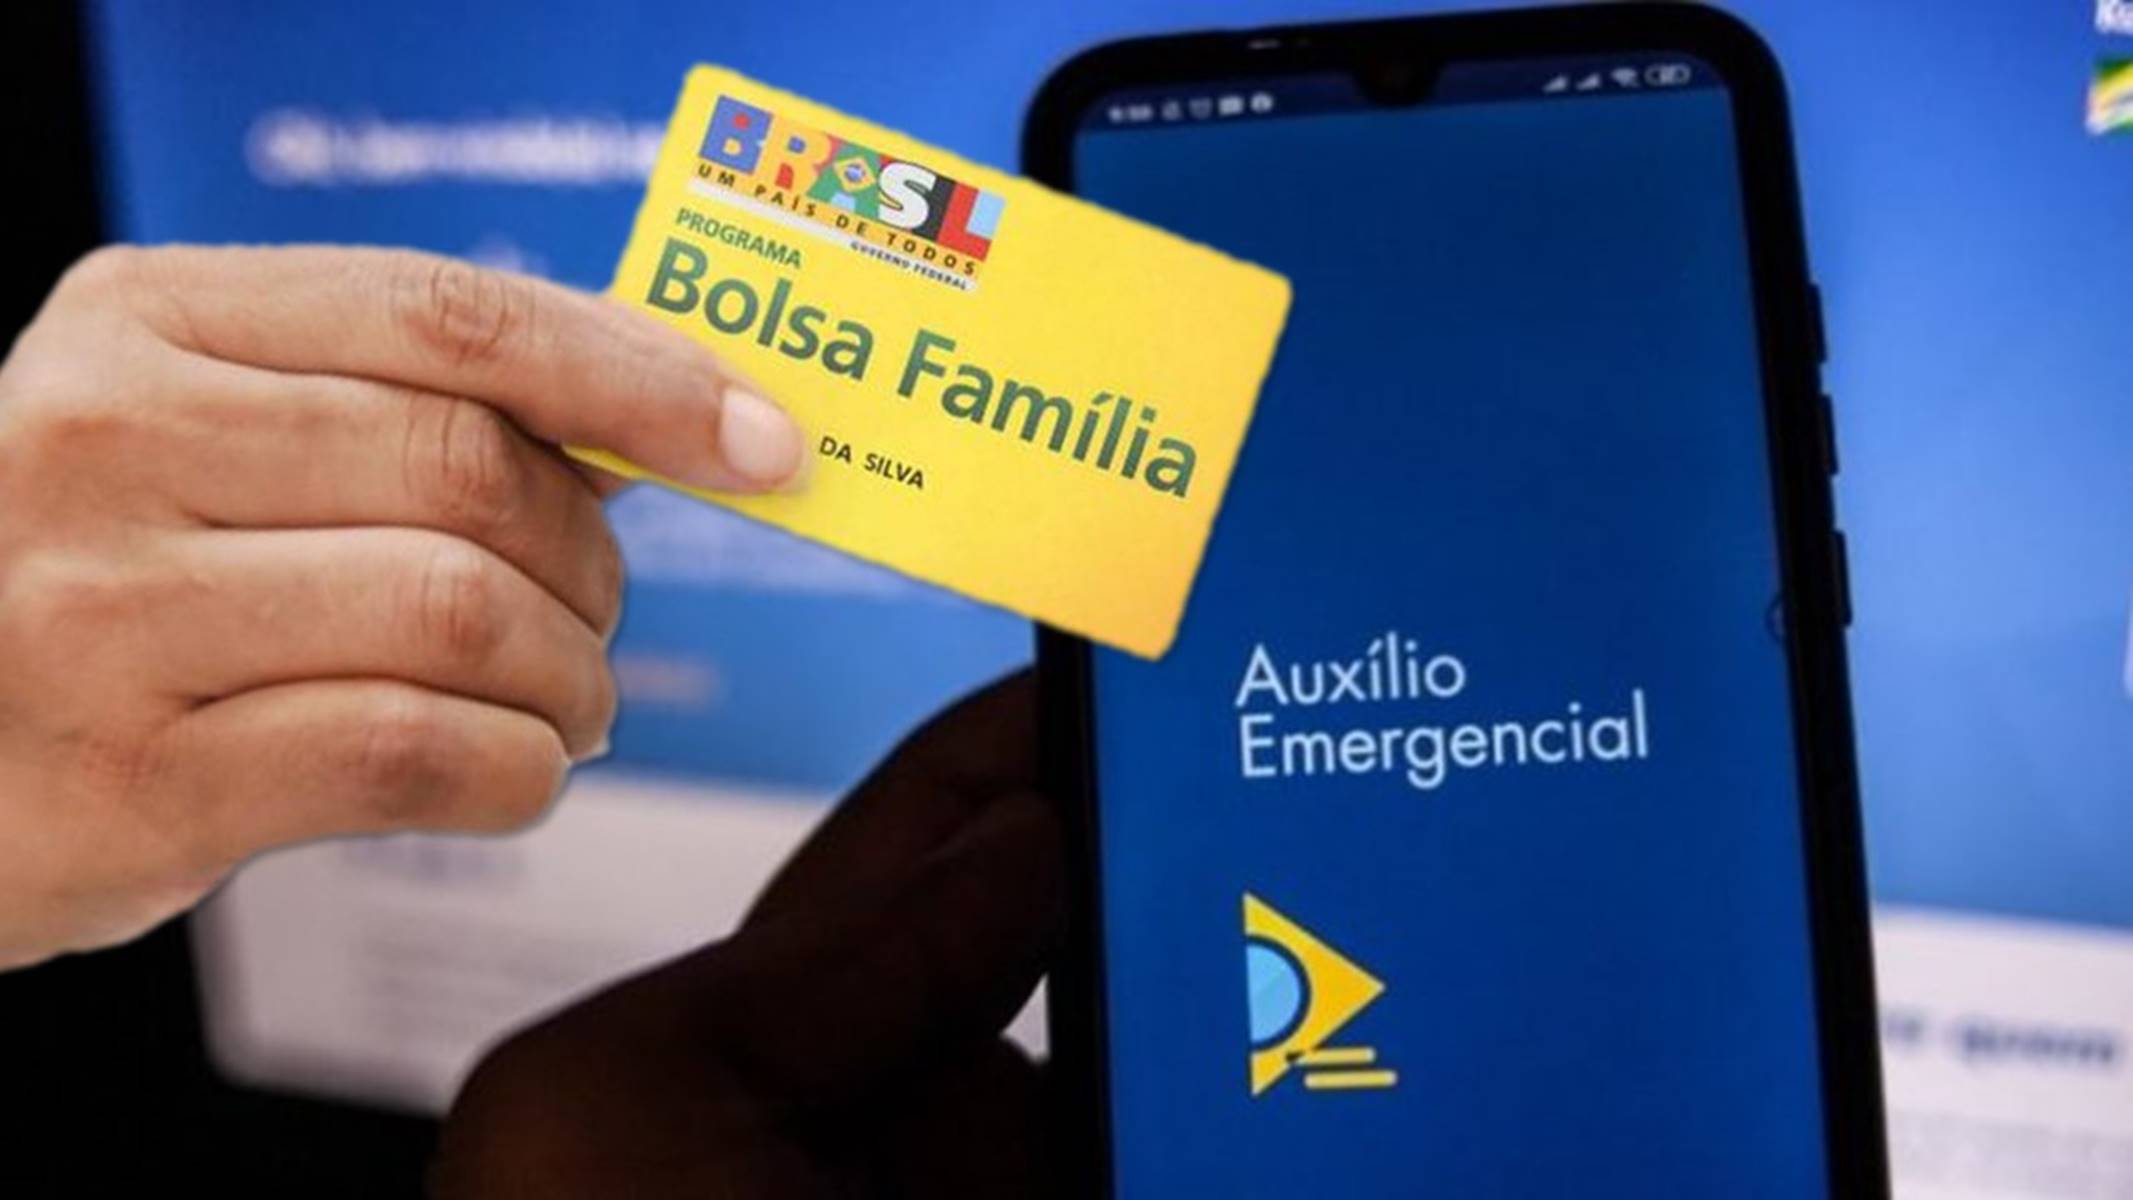 Bolsa Família: 5,4 milhões não receberão auxílio emergencial (Foto: Agência Brasil)